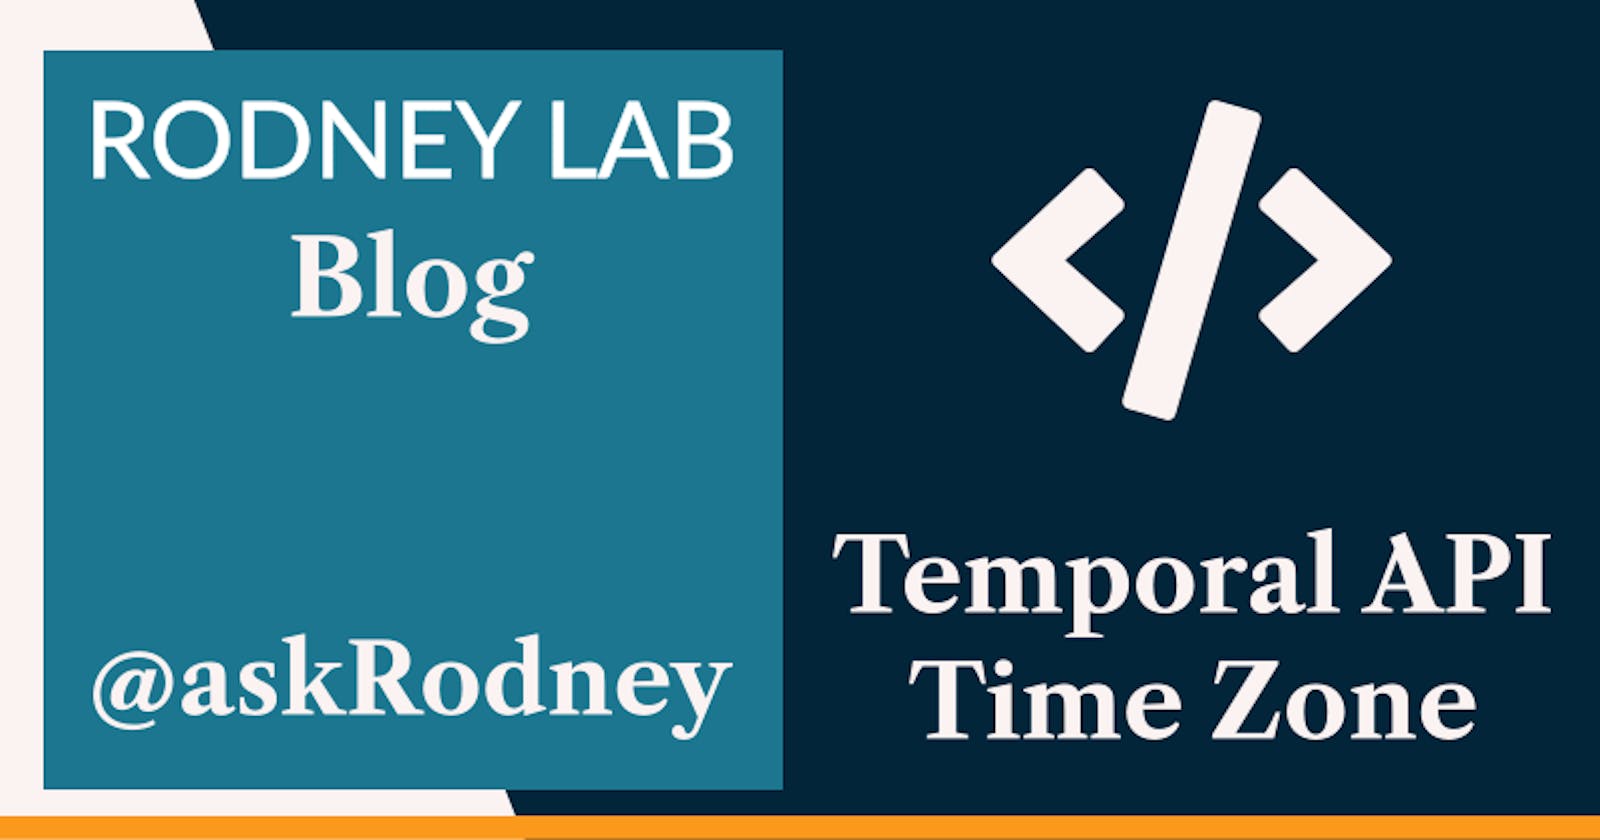 Temporal API Time Zones